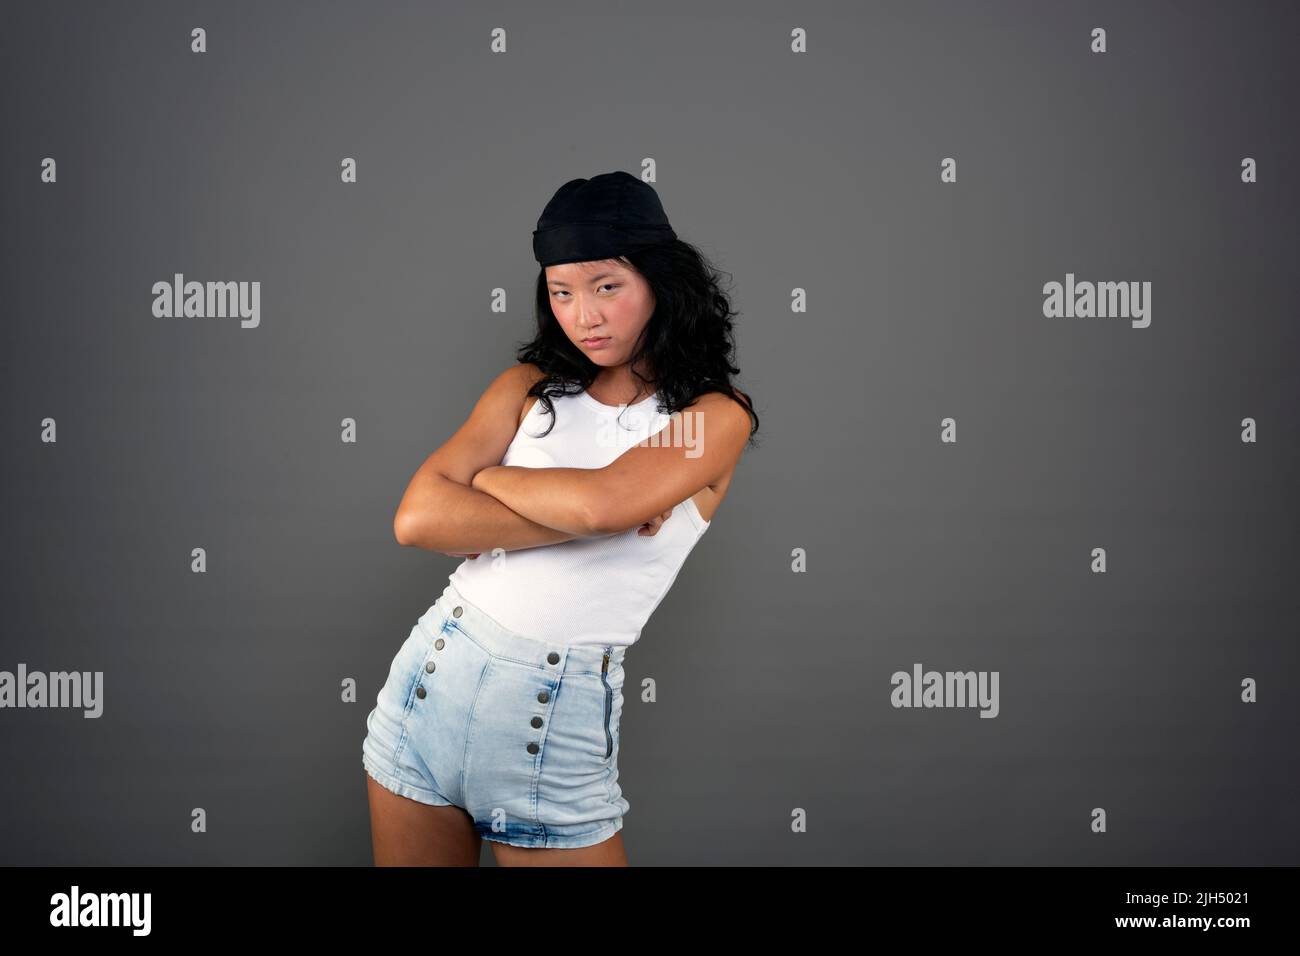 femme asiatique ethnique dans une attitude provocante de la tenue urbaine Banque D'Images